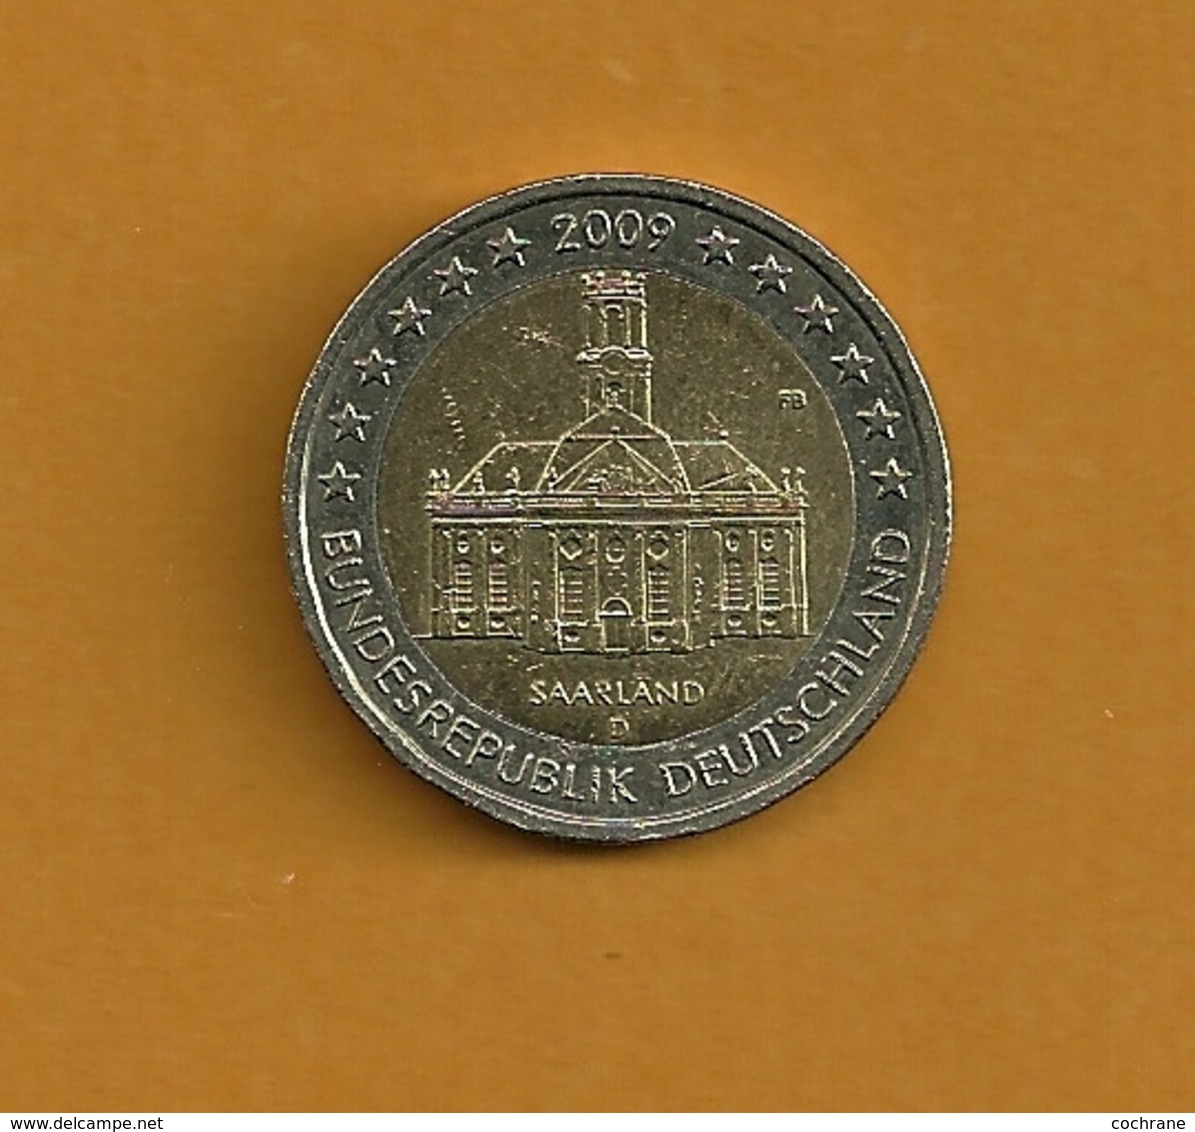 ALLEMAGNE 2 Euros Saarland 2009 Lettre D - Allemagne